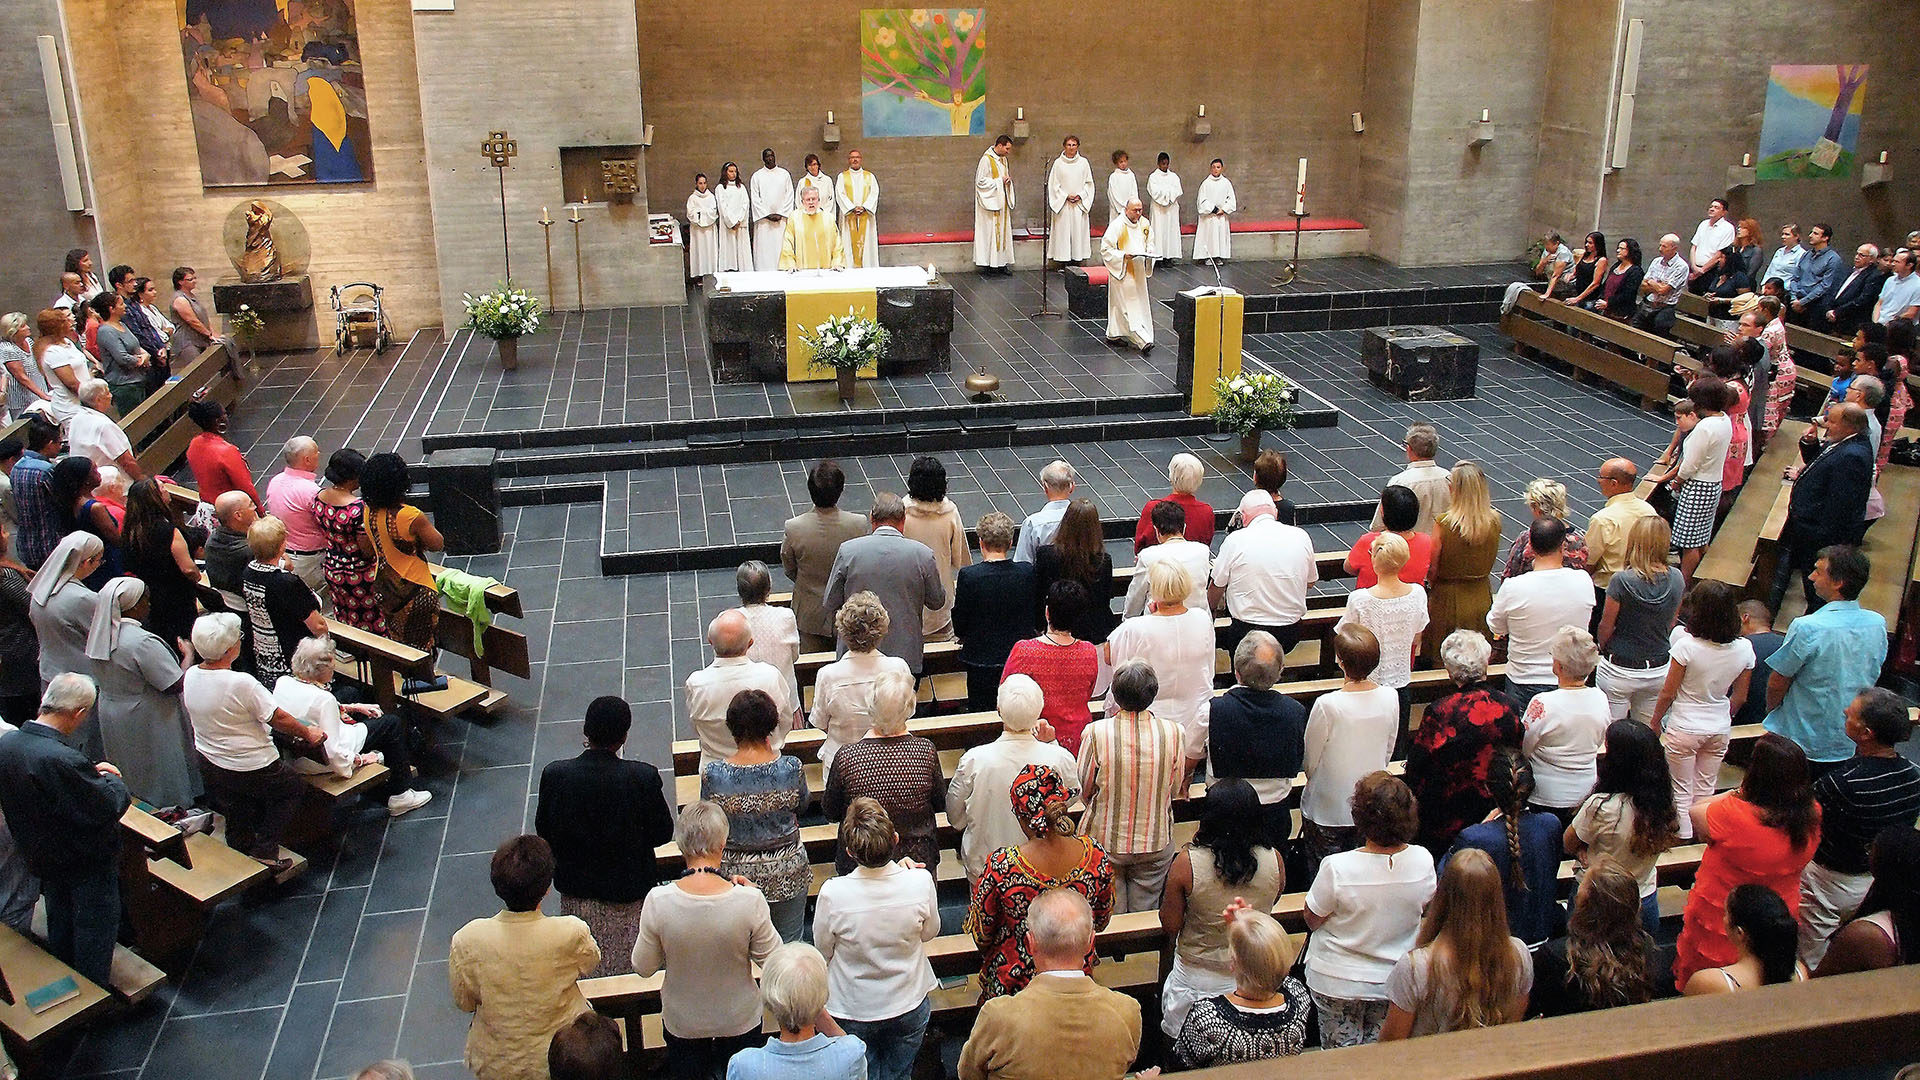 La messe de la paroisse du Christ-Roi, à Bienne, sera diffusée dans trois pays: Suisse, Belgique et Pays-Bas. | © Paroisse de Bienne